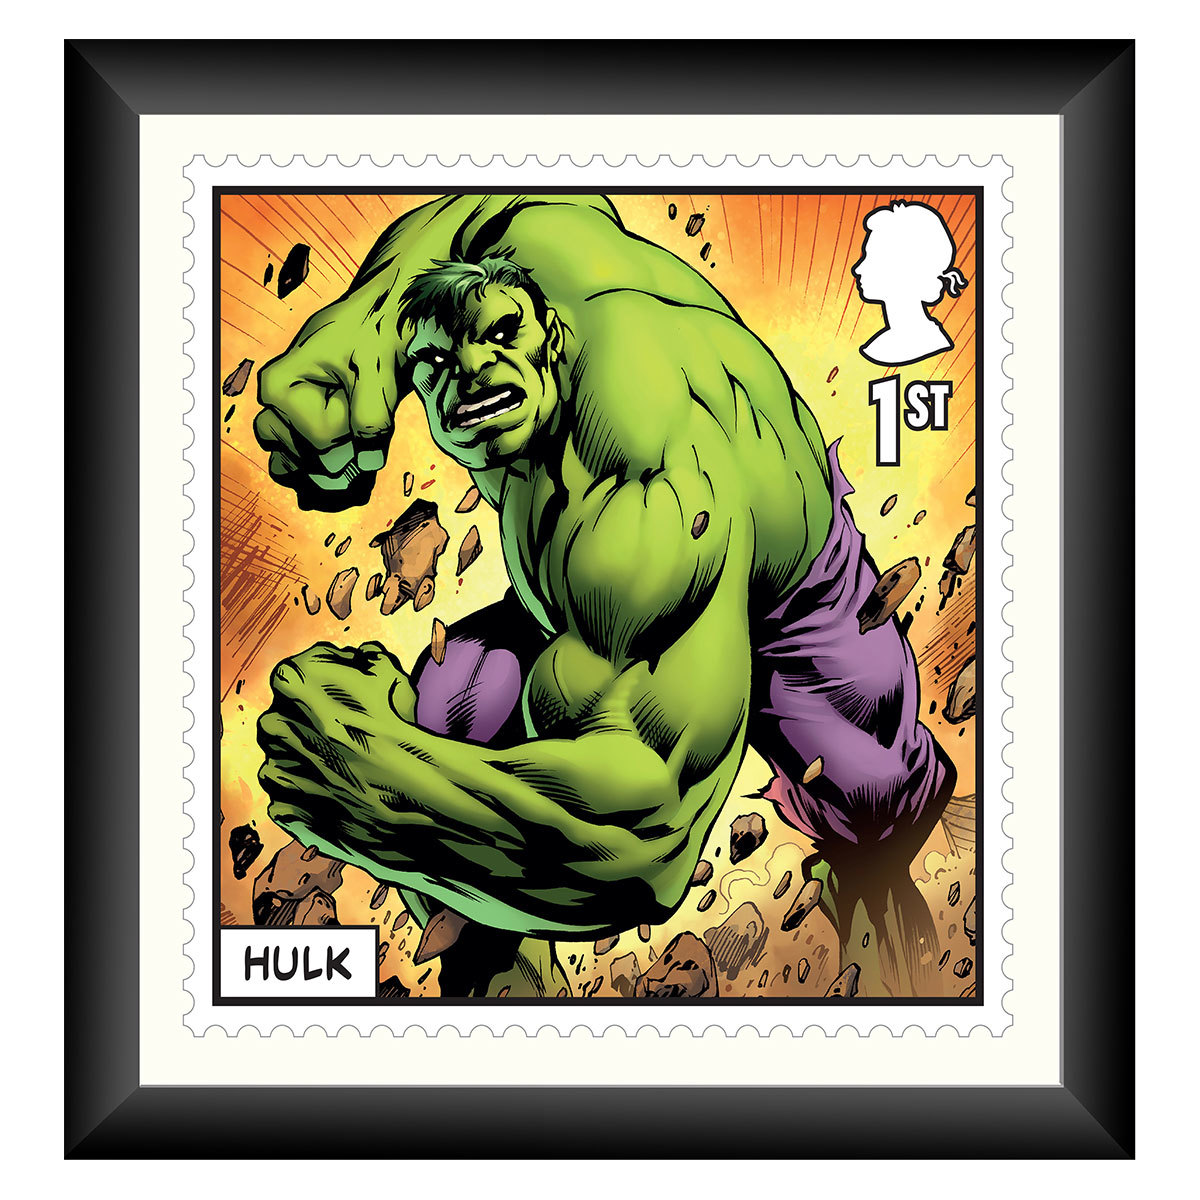 The Hulk framed Stamp